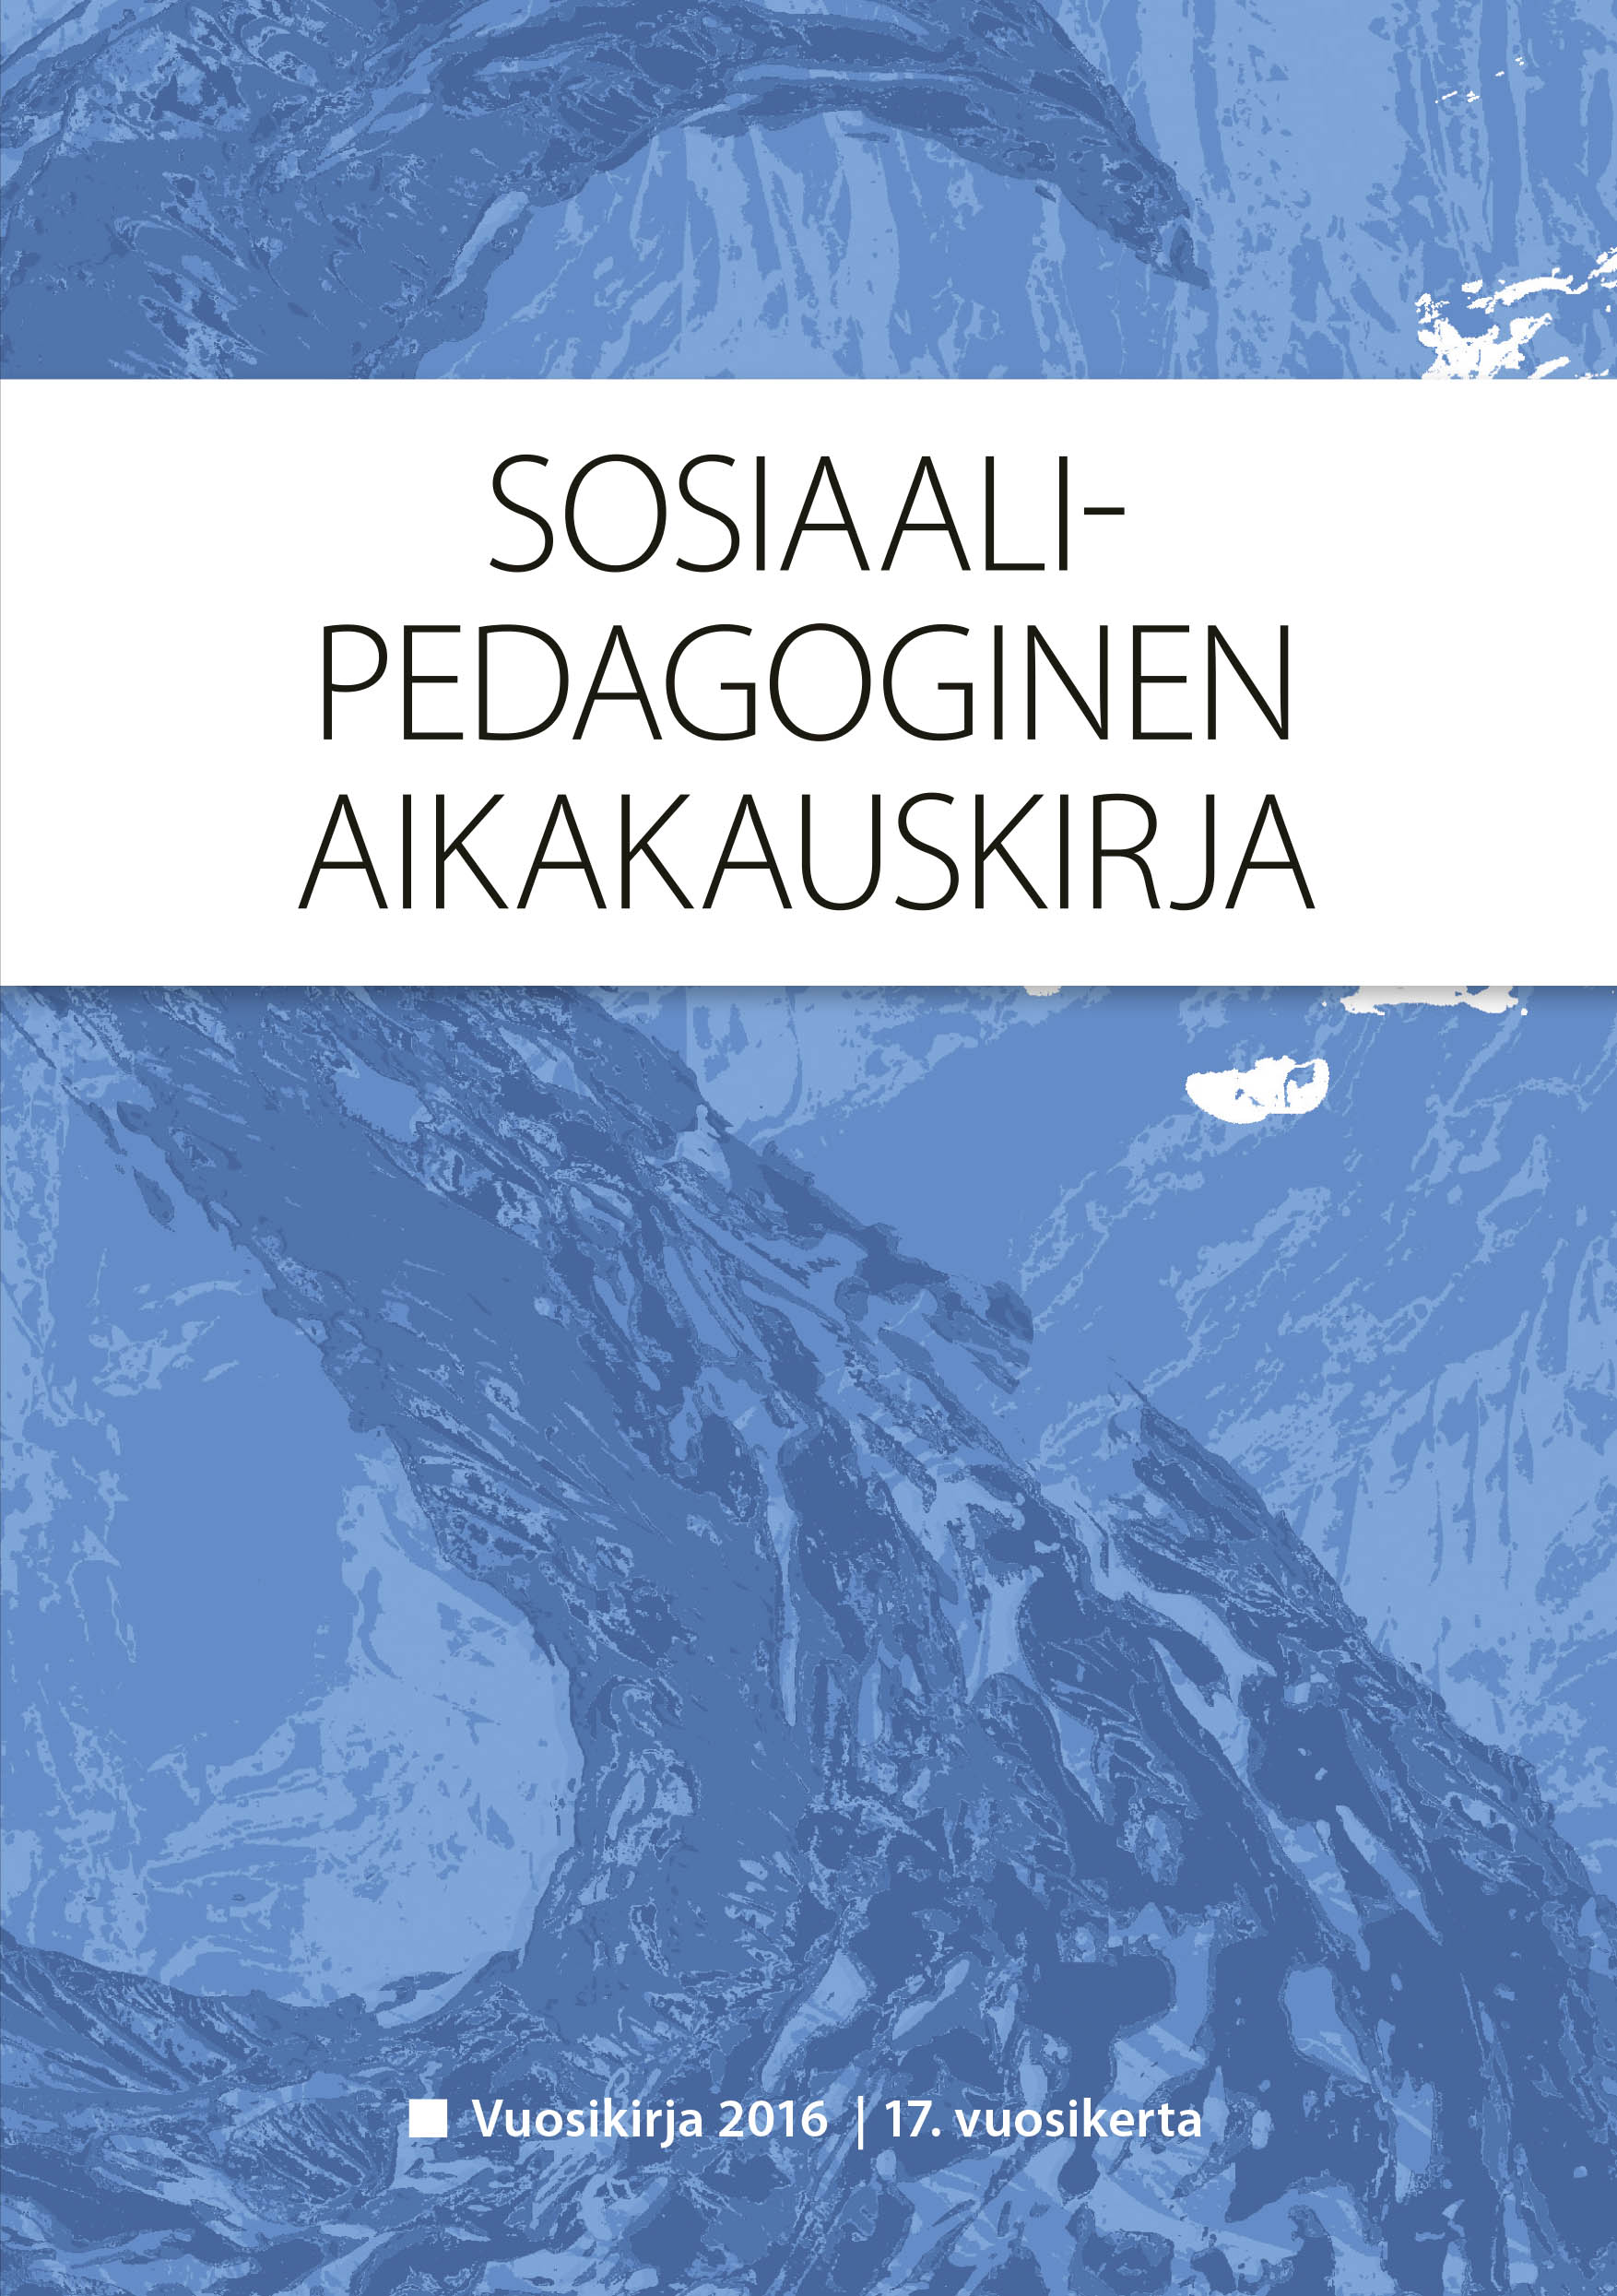 					Näytä Vol 17 (2016): Sosiaalipedagoginen aikakauskirja, vuosikirja 2016
				